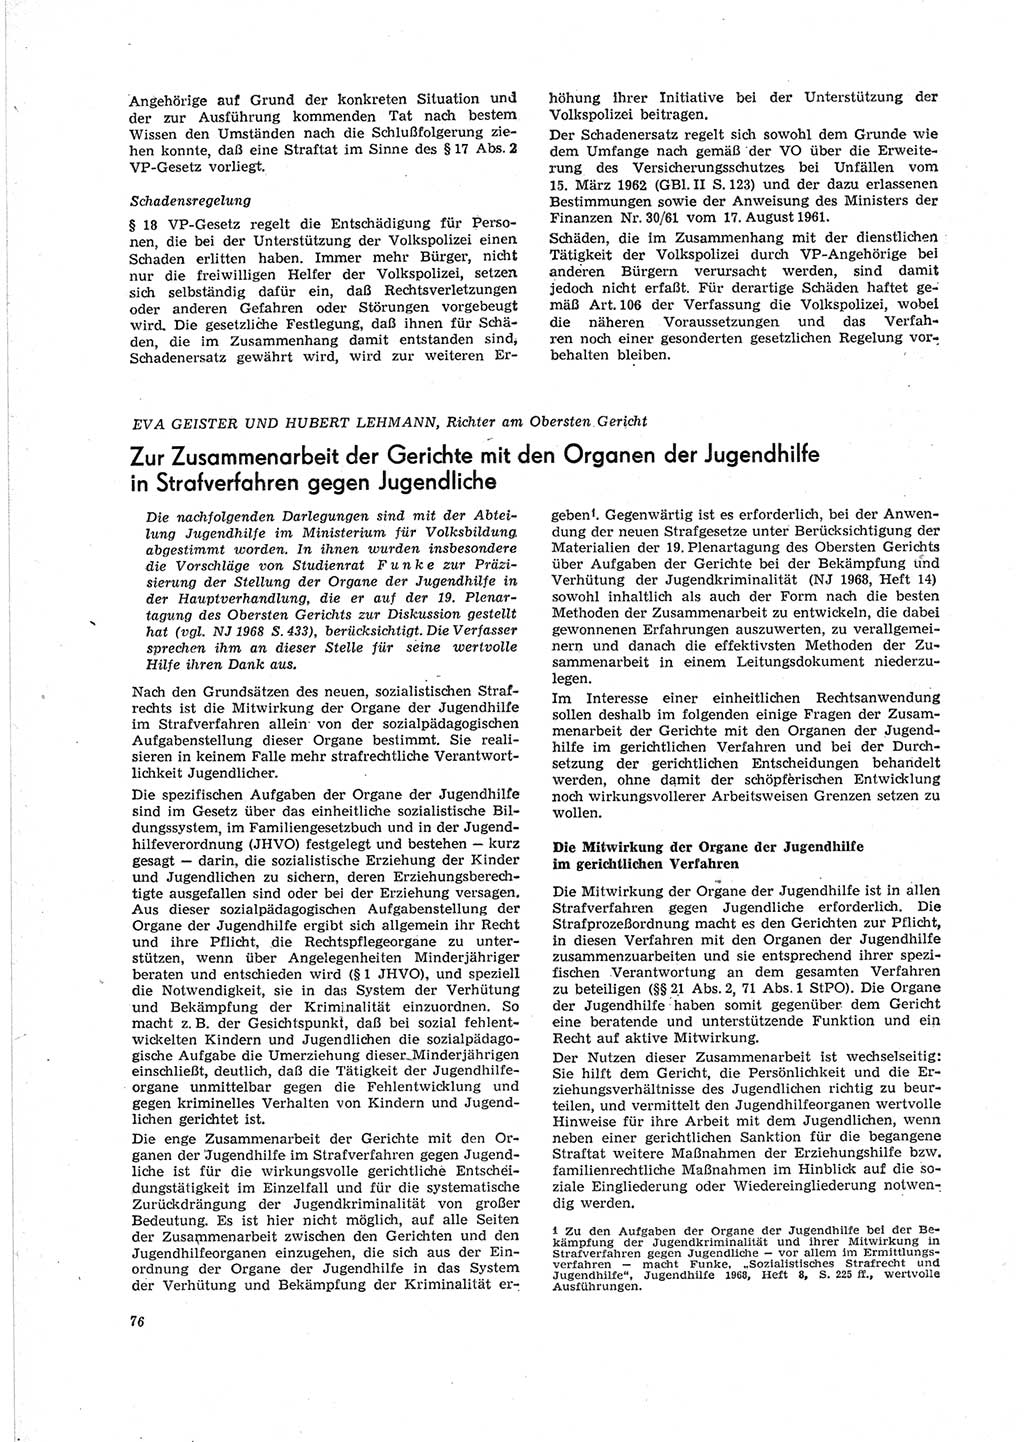 Neue Justiz (NJ), Zeitschrift für Recht und Rechtswissenschaft [Deutsche Demokratische Republik (DDR)], 23. Jahrgang 1969, Seite 76 (NJ DDR 1969, S. 76)